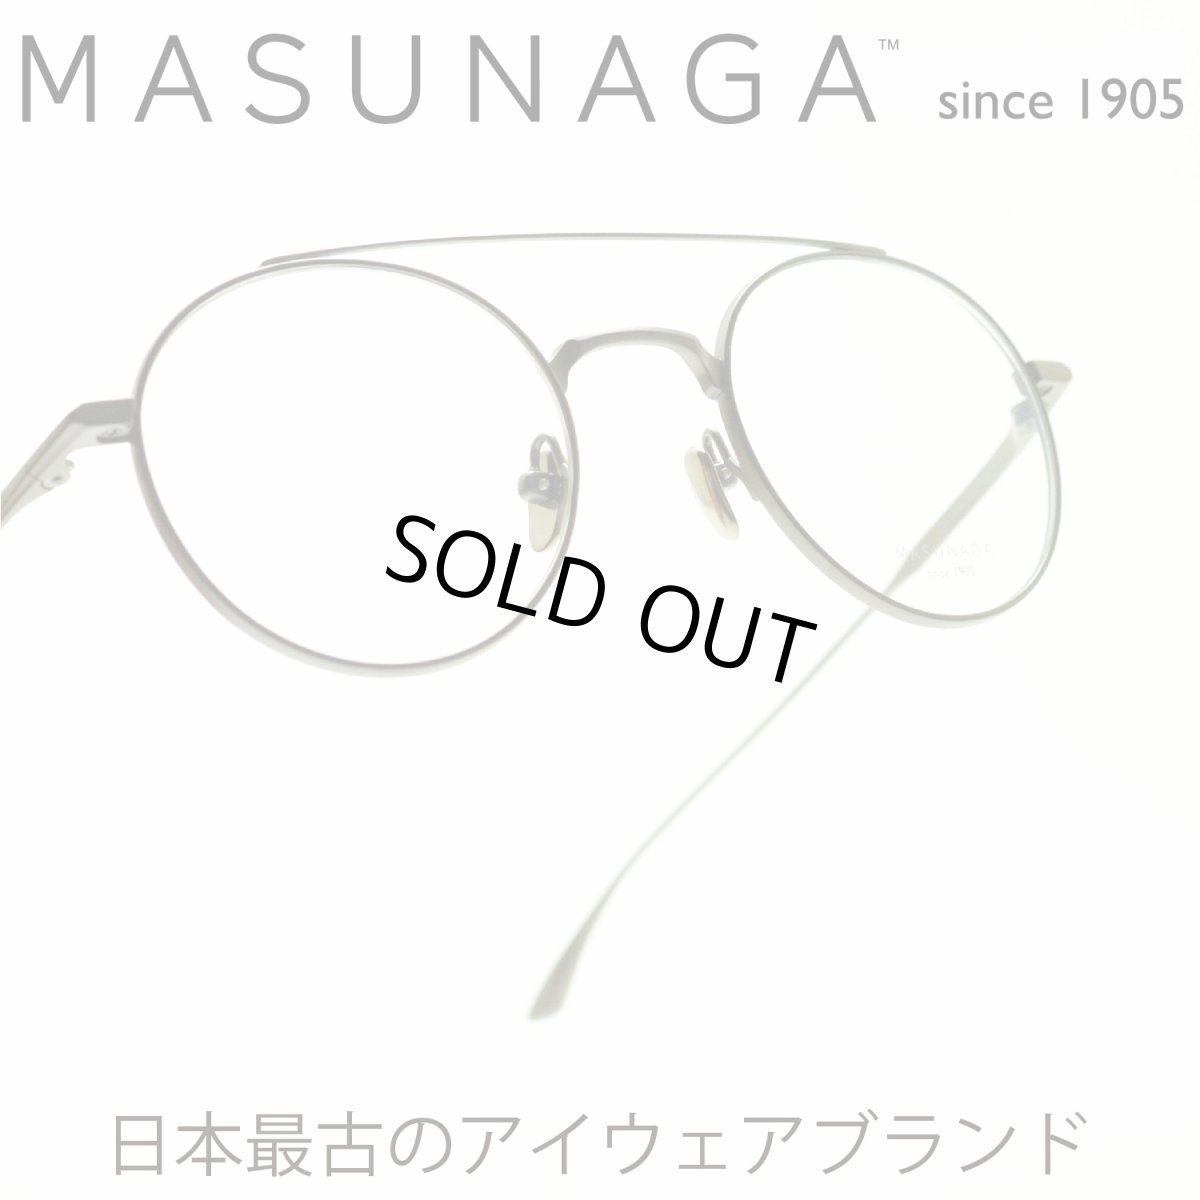 画像1: 増永眼鏡 MASUNAGA since 1905 RHAPSODY col-34 DGRY メガネ 眼鏡 めがね メンズ レディース おしゃれ ブランド 人気 おすすめ フレーム 流行り 度付き レンズ (1)